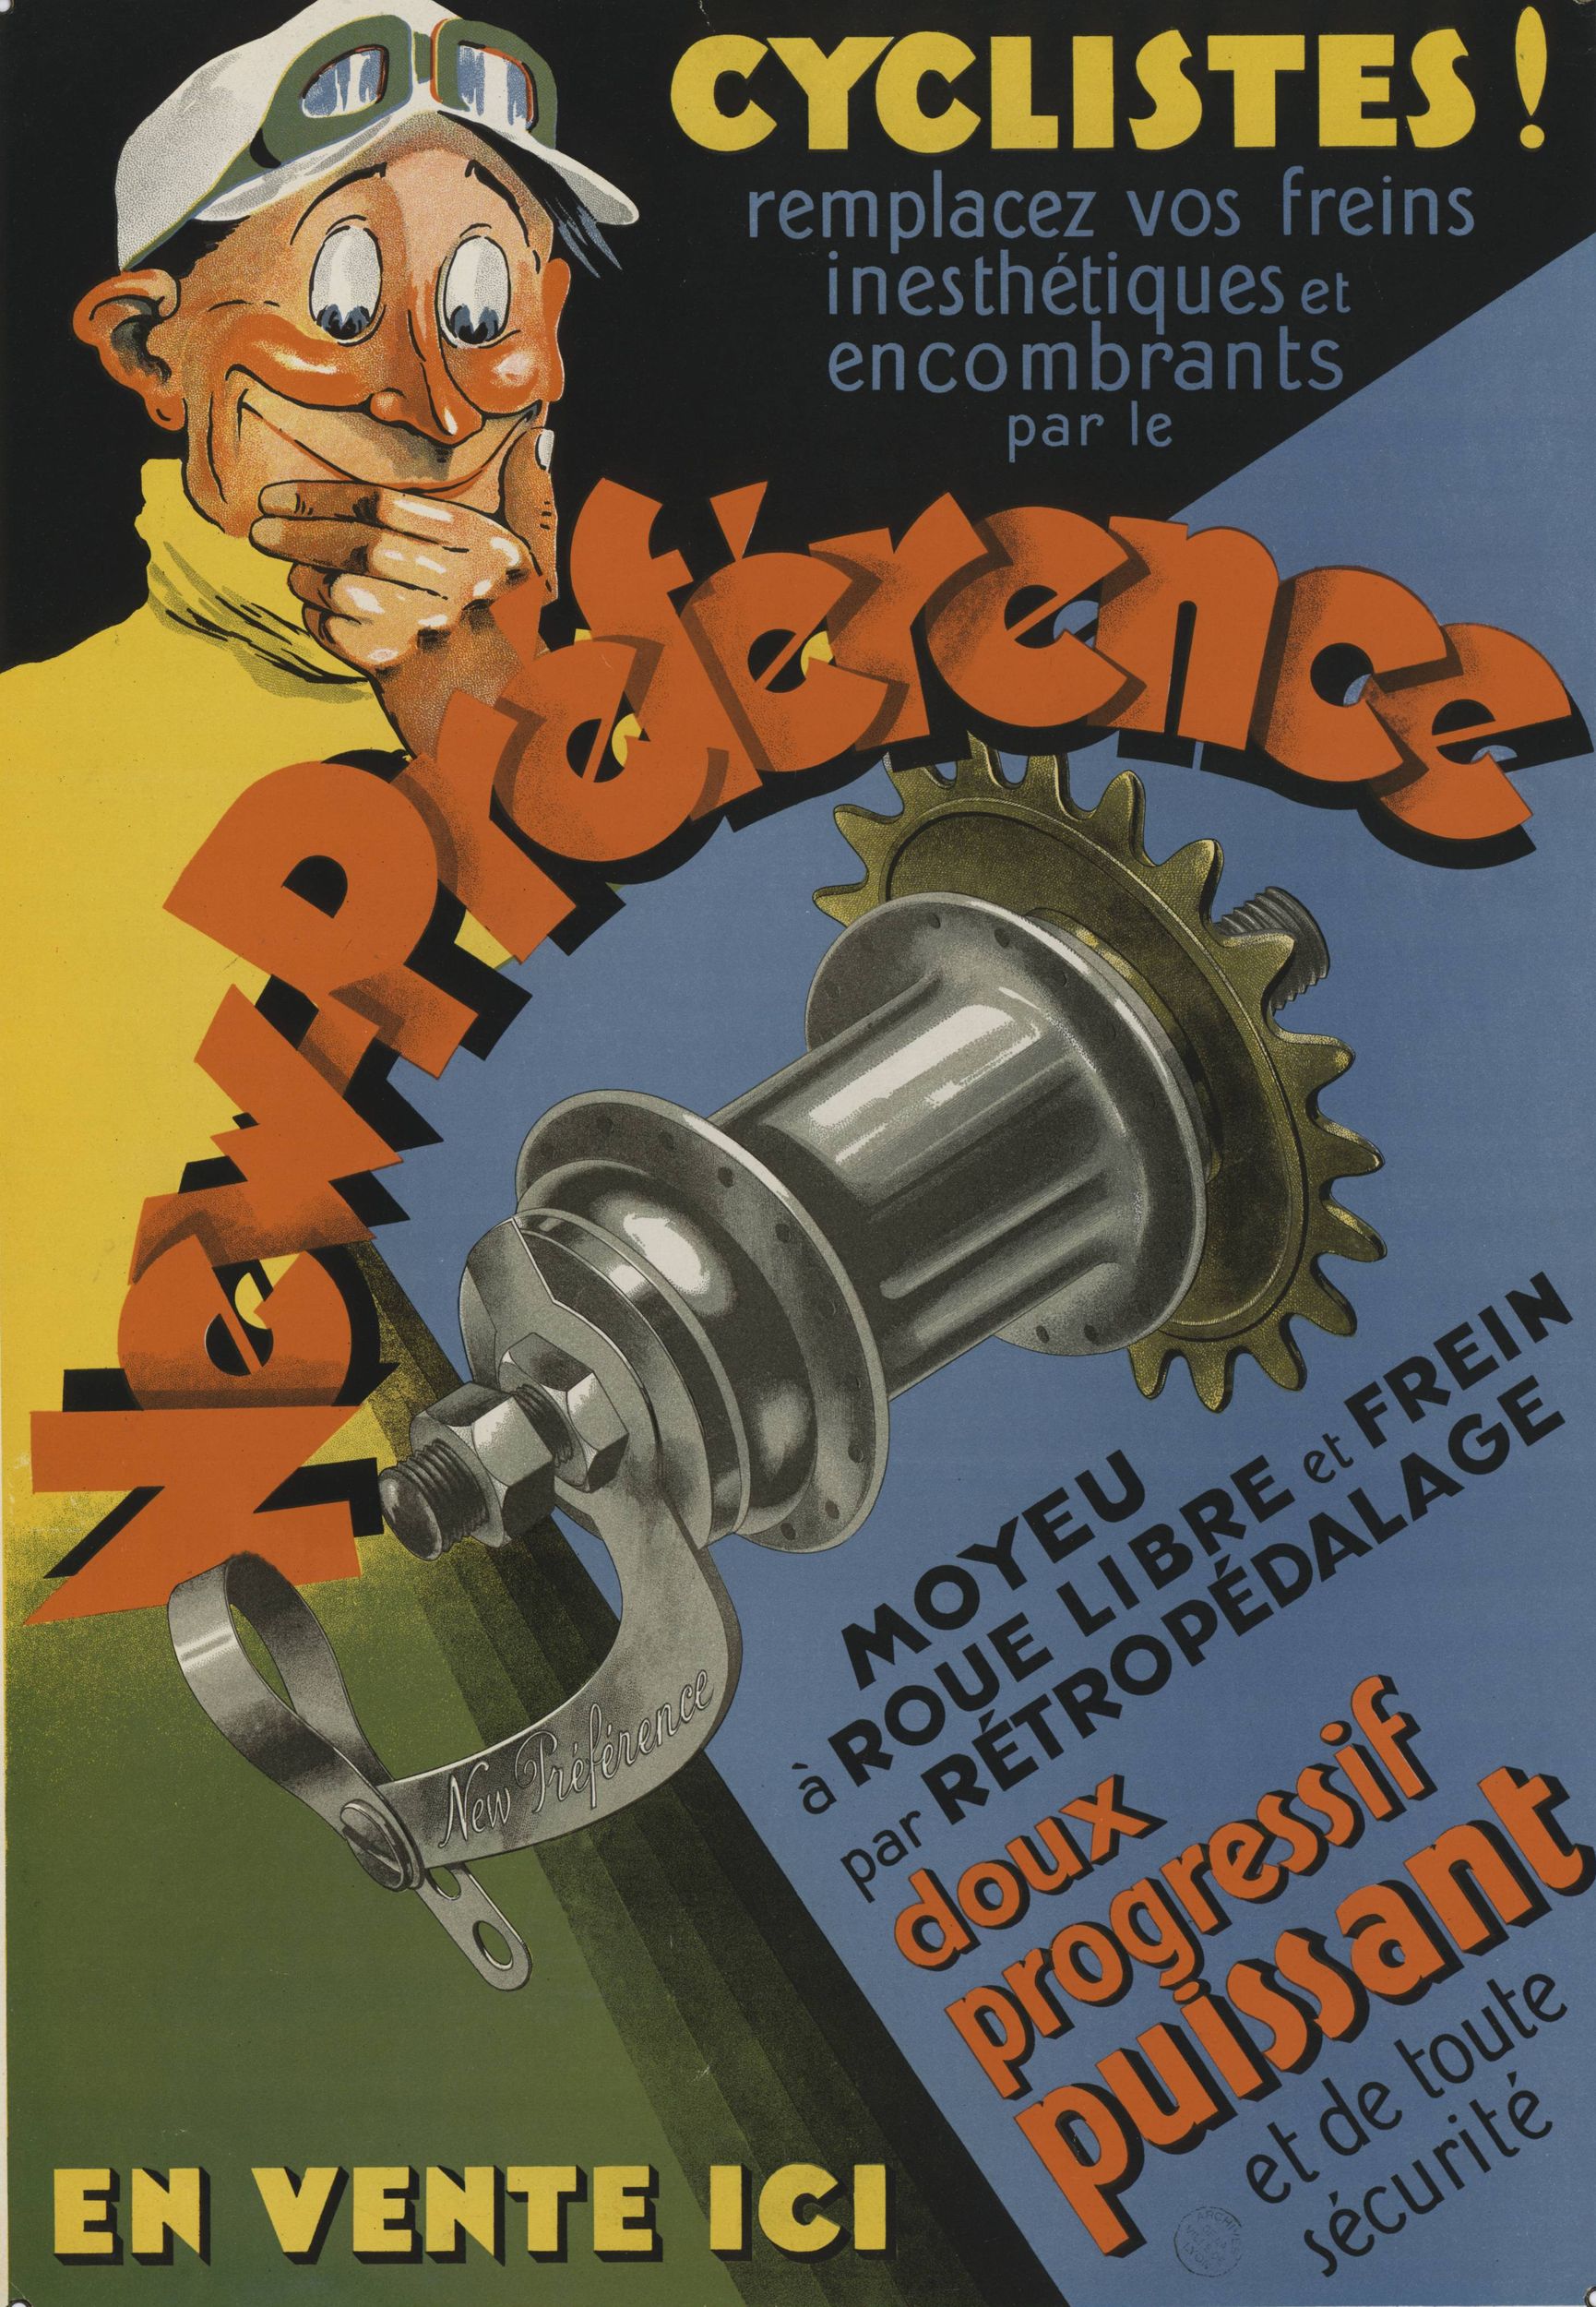 Cyclistes ! Remplacez vos freins inesthétiques et encombrants par le New-préférence : affiche publicitaire couleur (1900, cote : 6FI/3195)